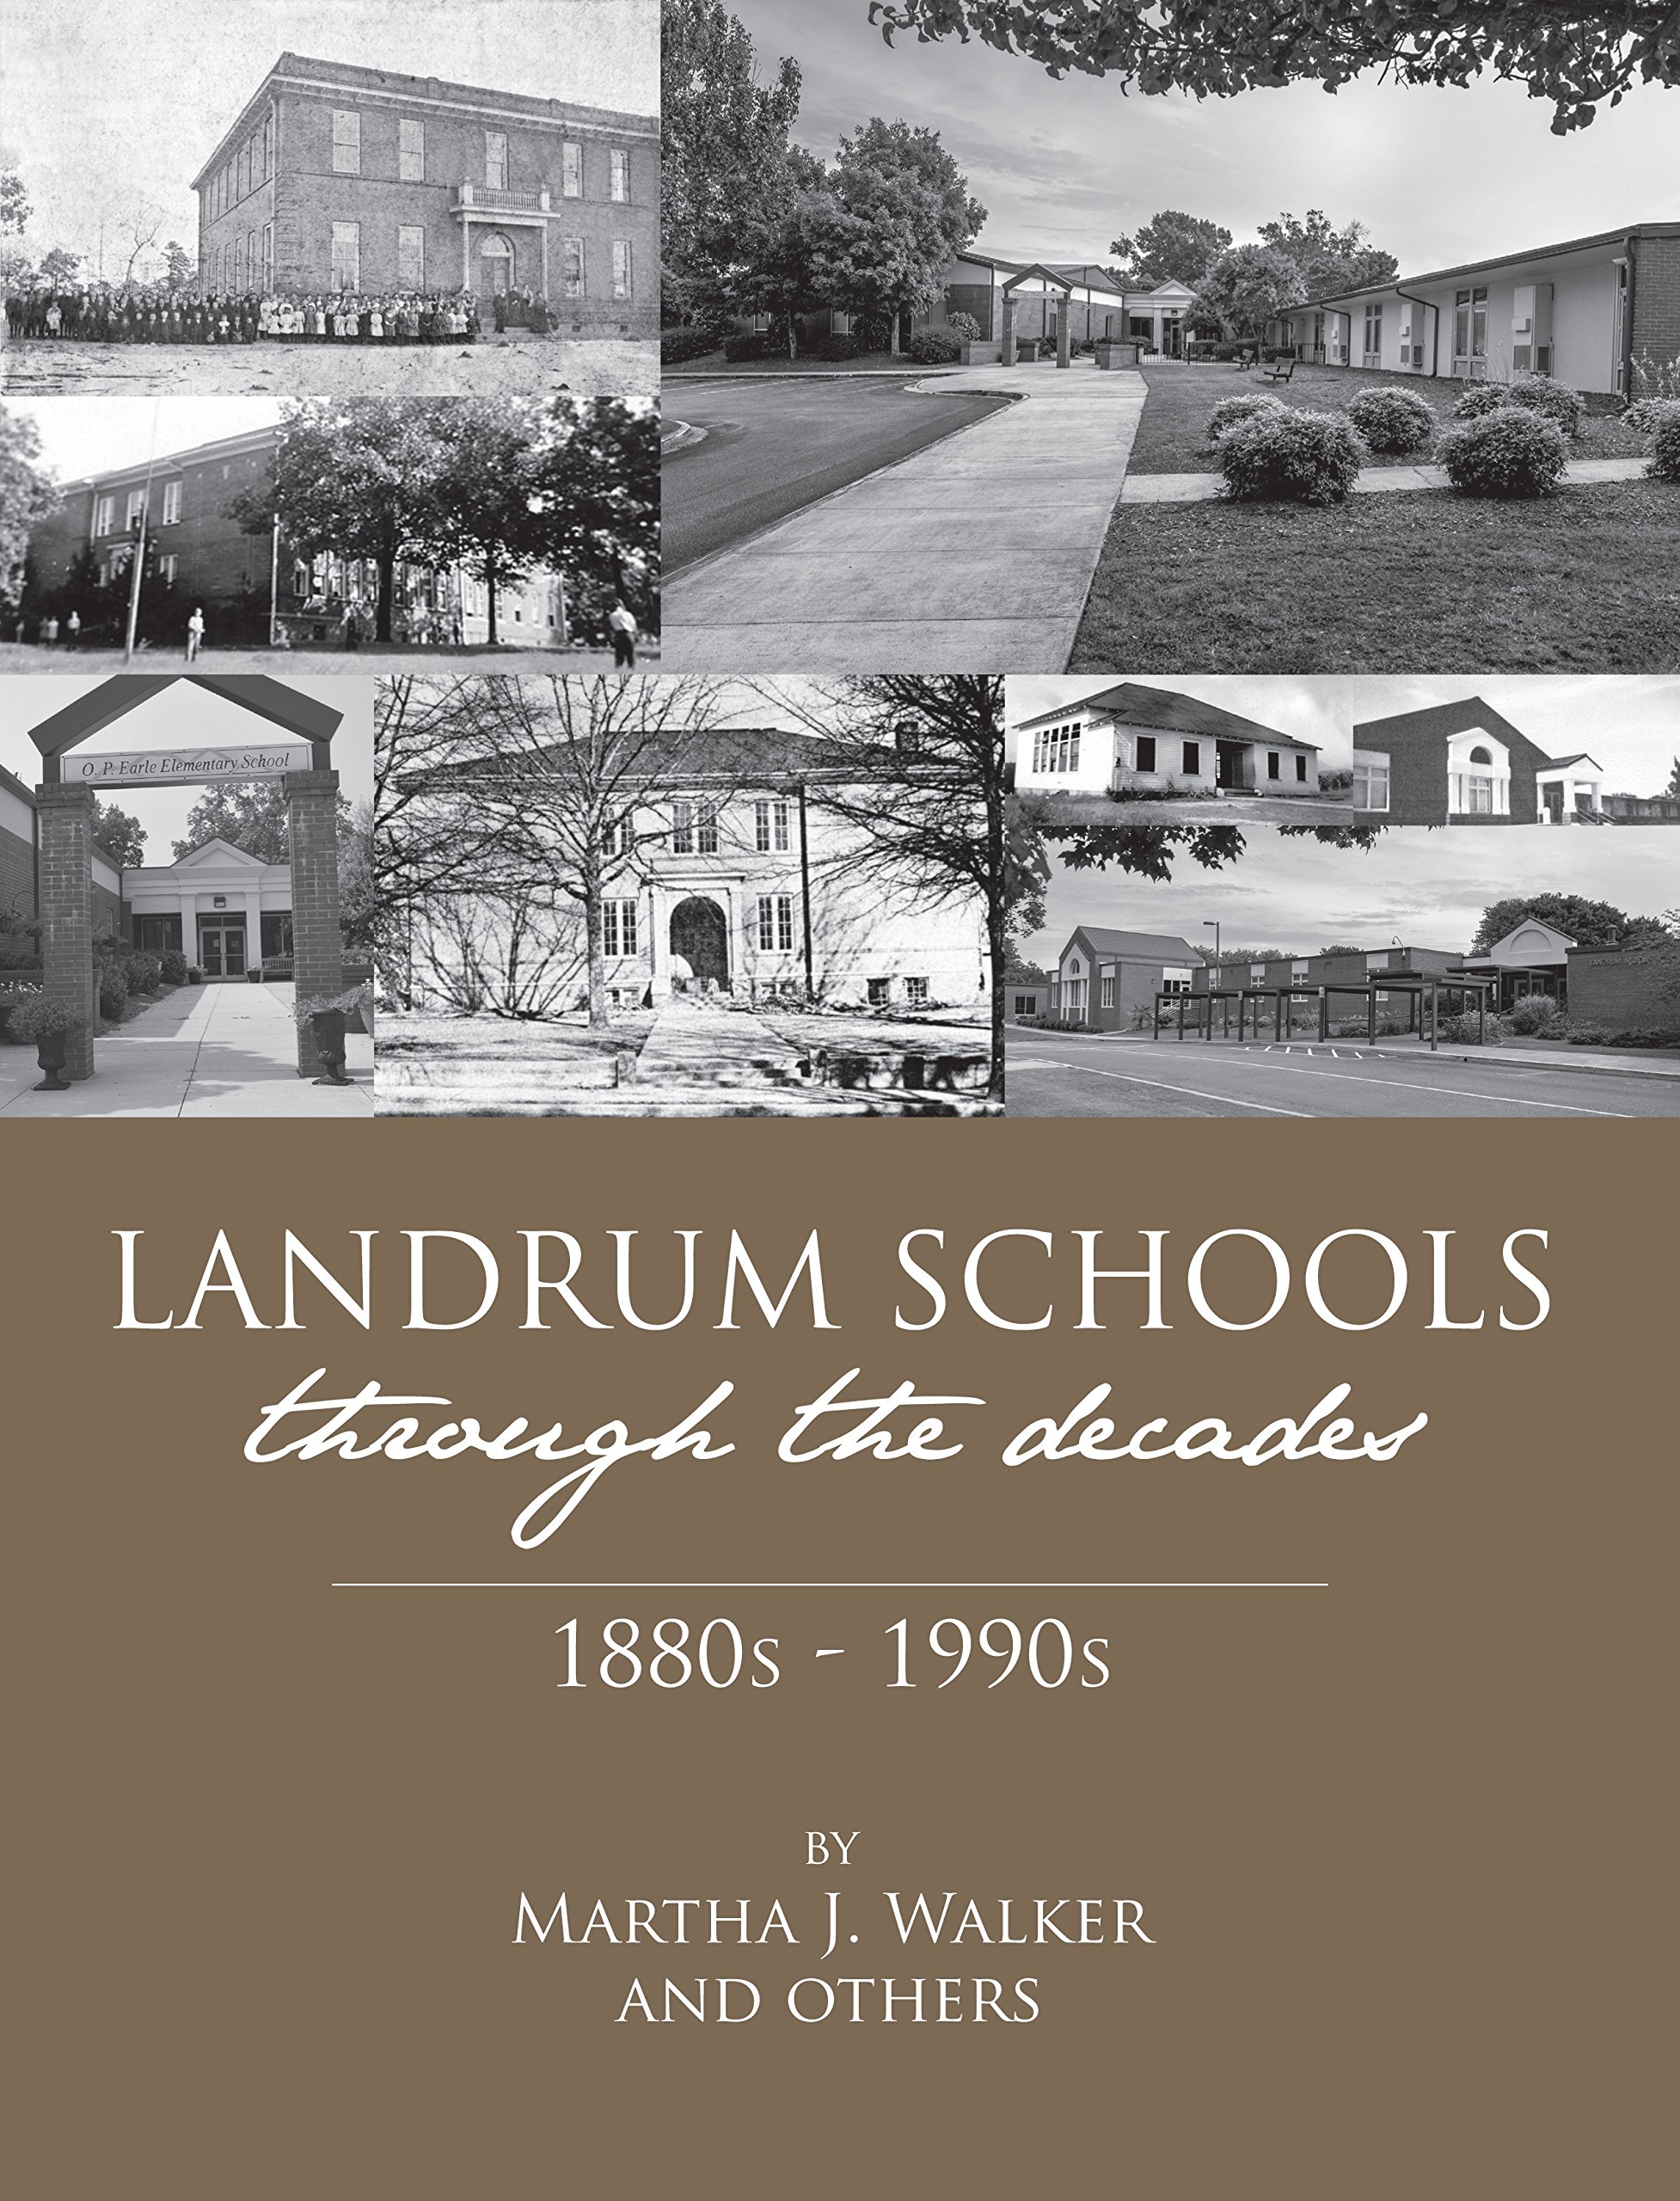 Landrum Schools book cover